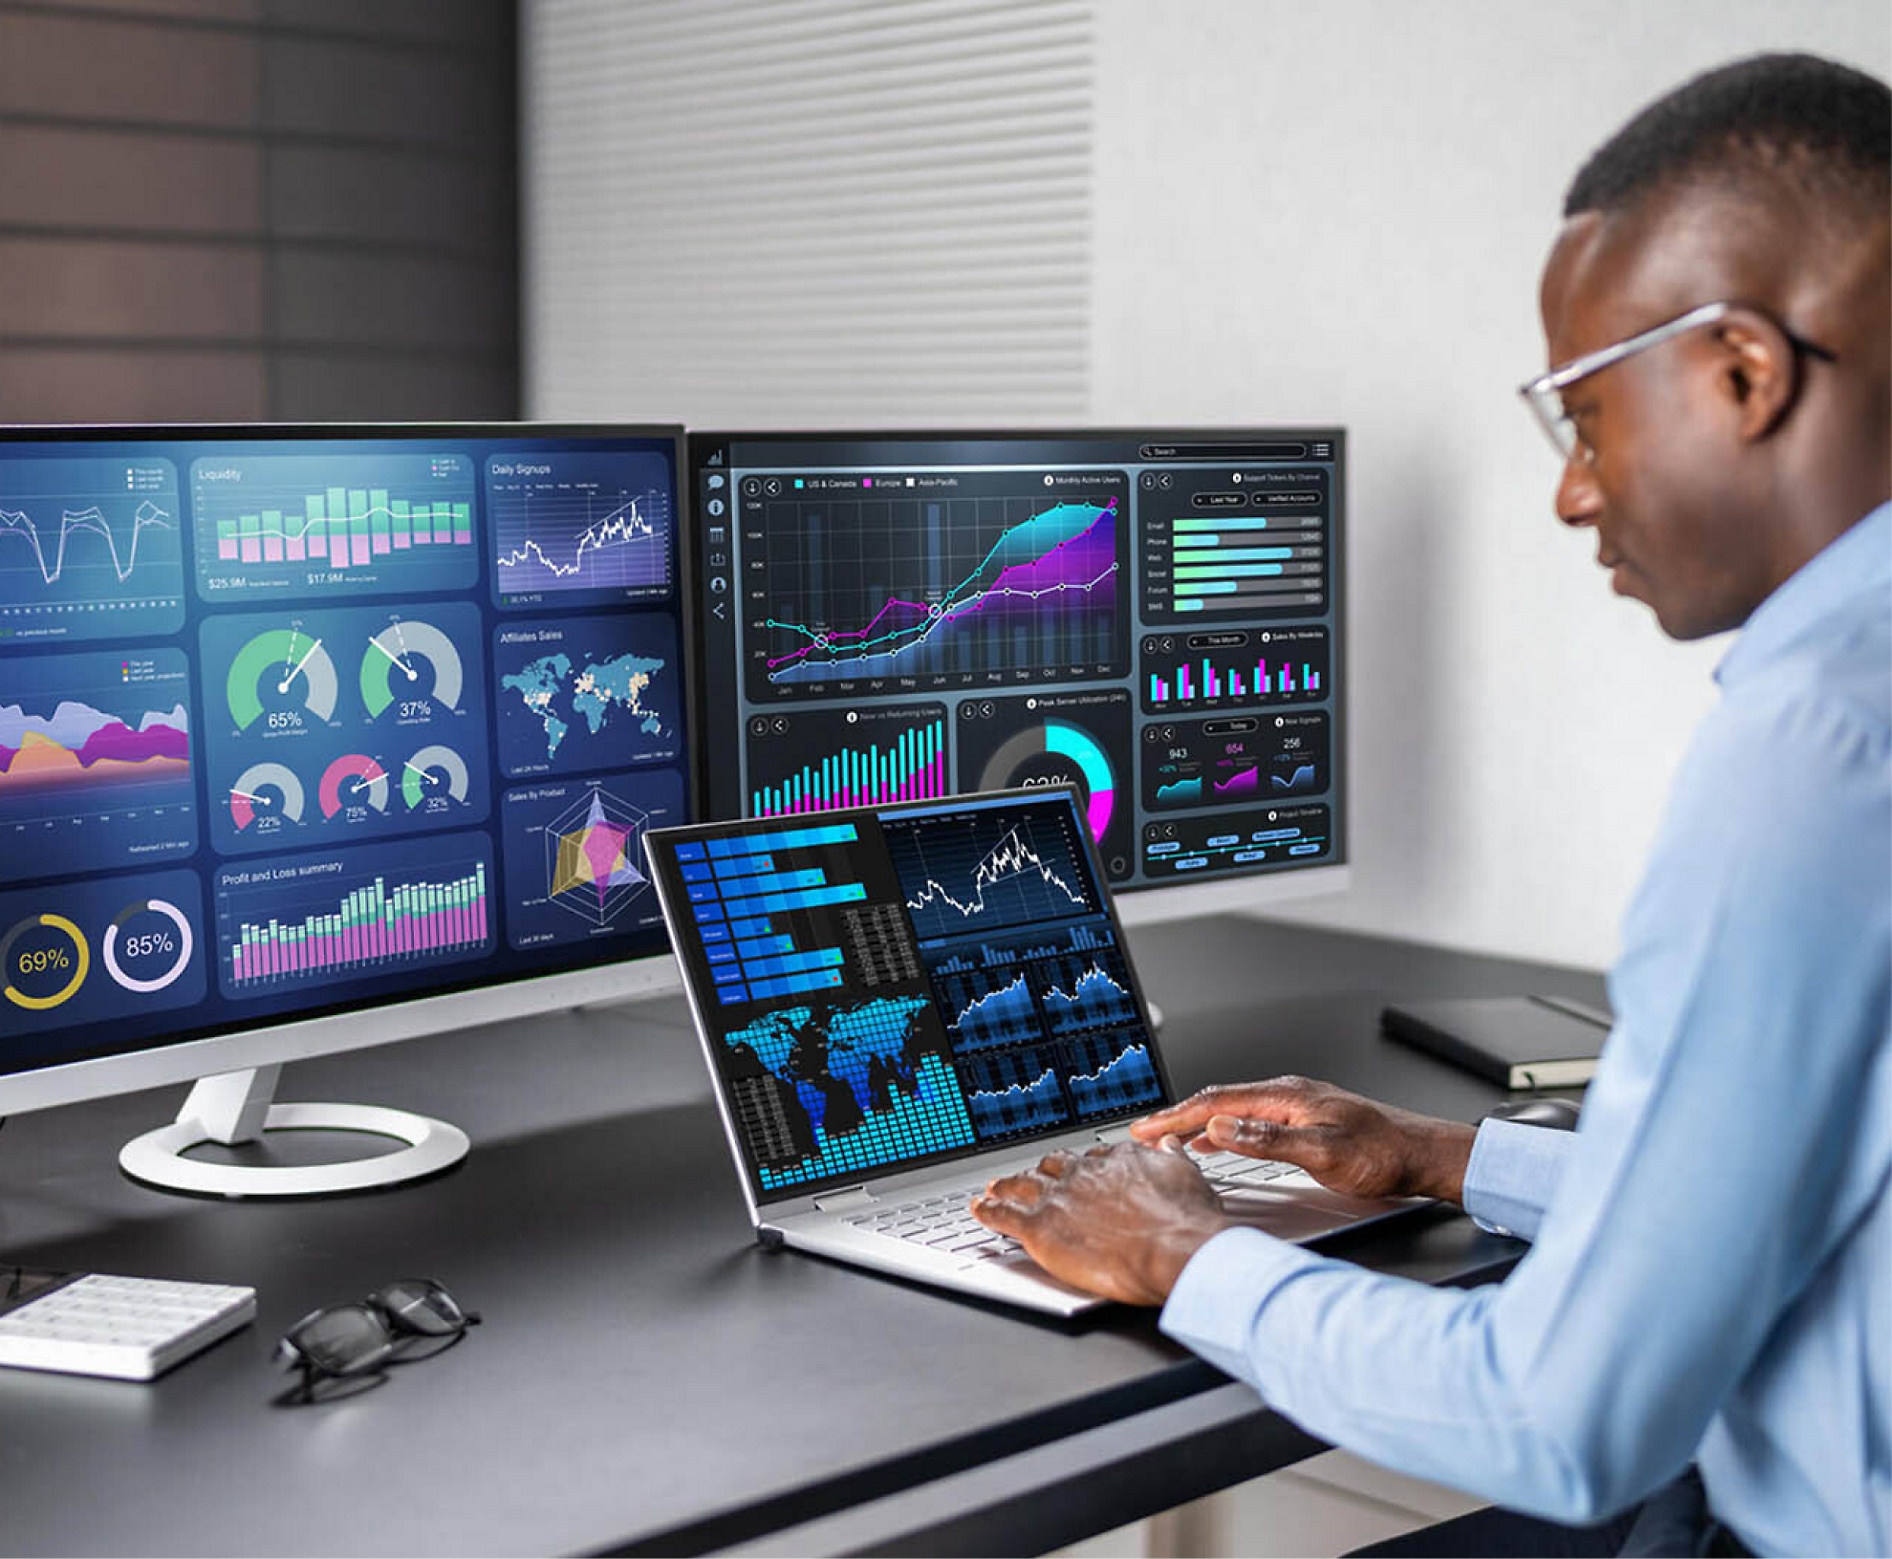 Un hombre analiza datos financieros en varias pantallas de equipos en un entorno moderno de oficina.